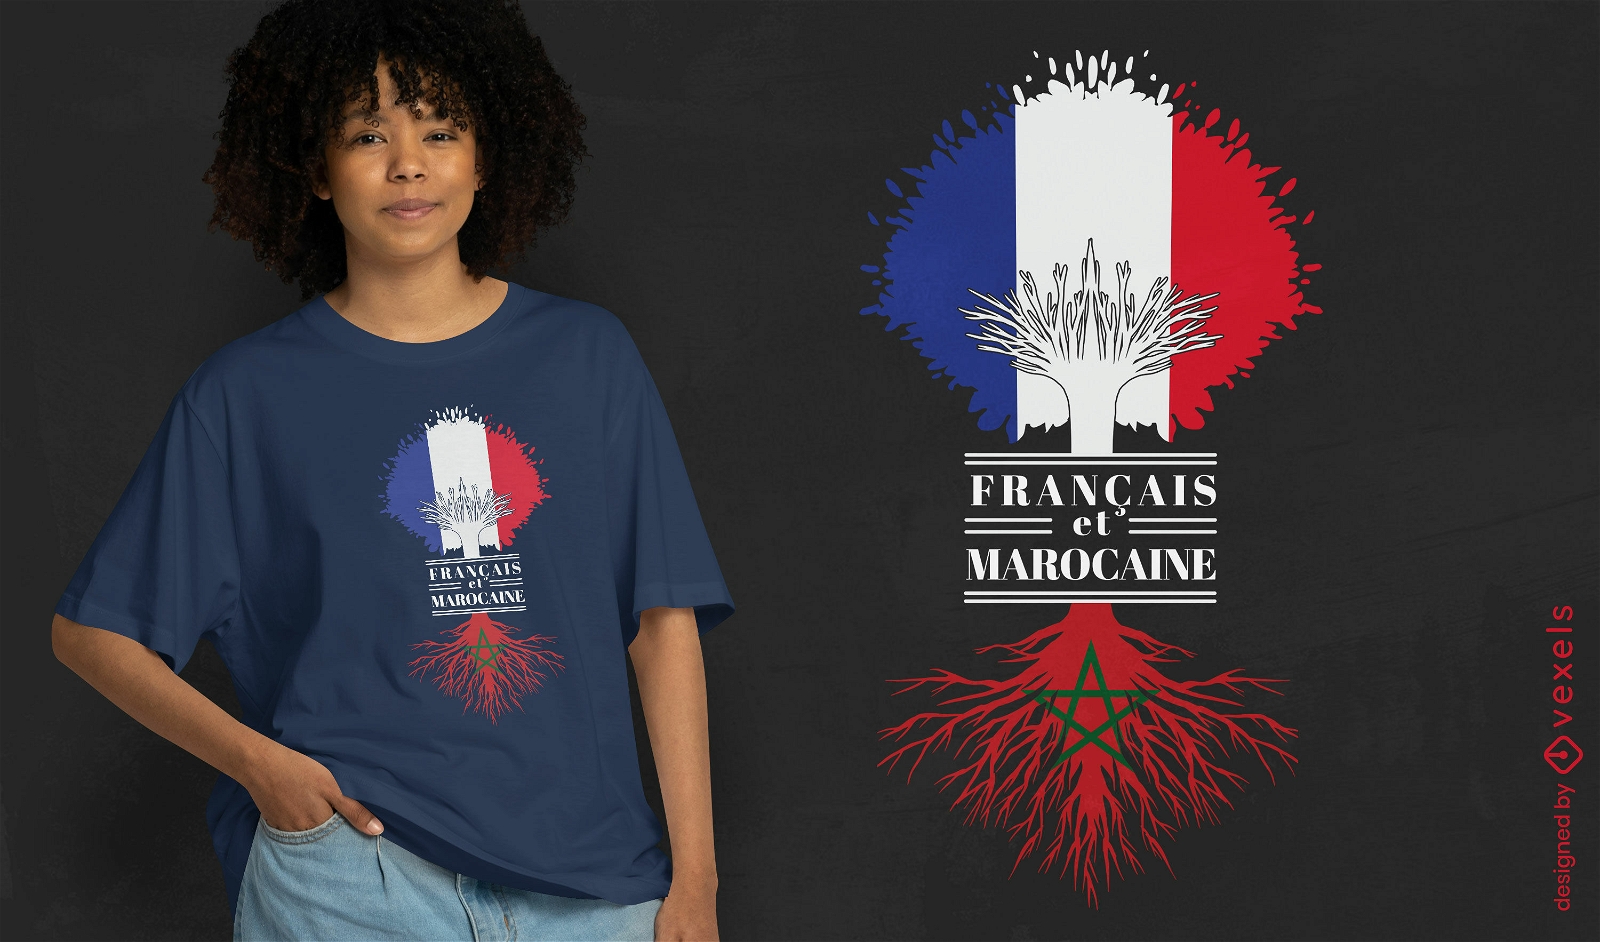 Französisches und marokkanisches T-Shirt-Design